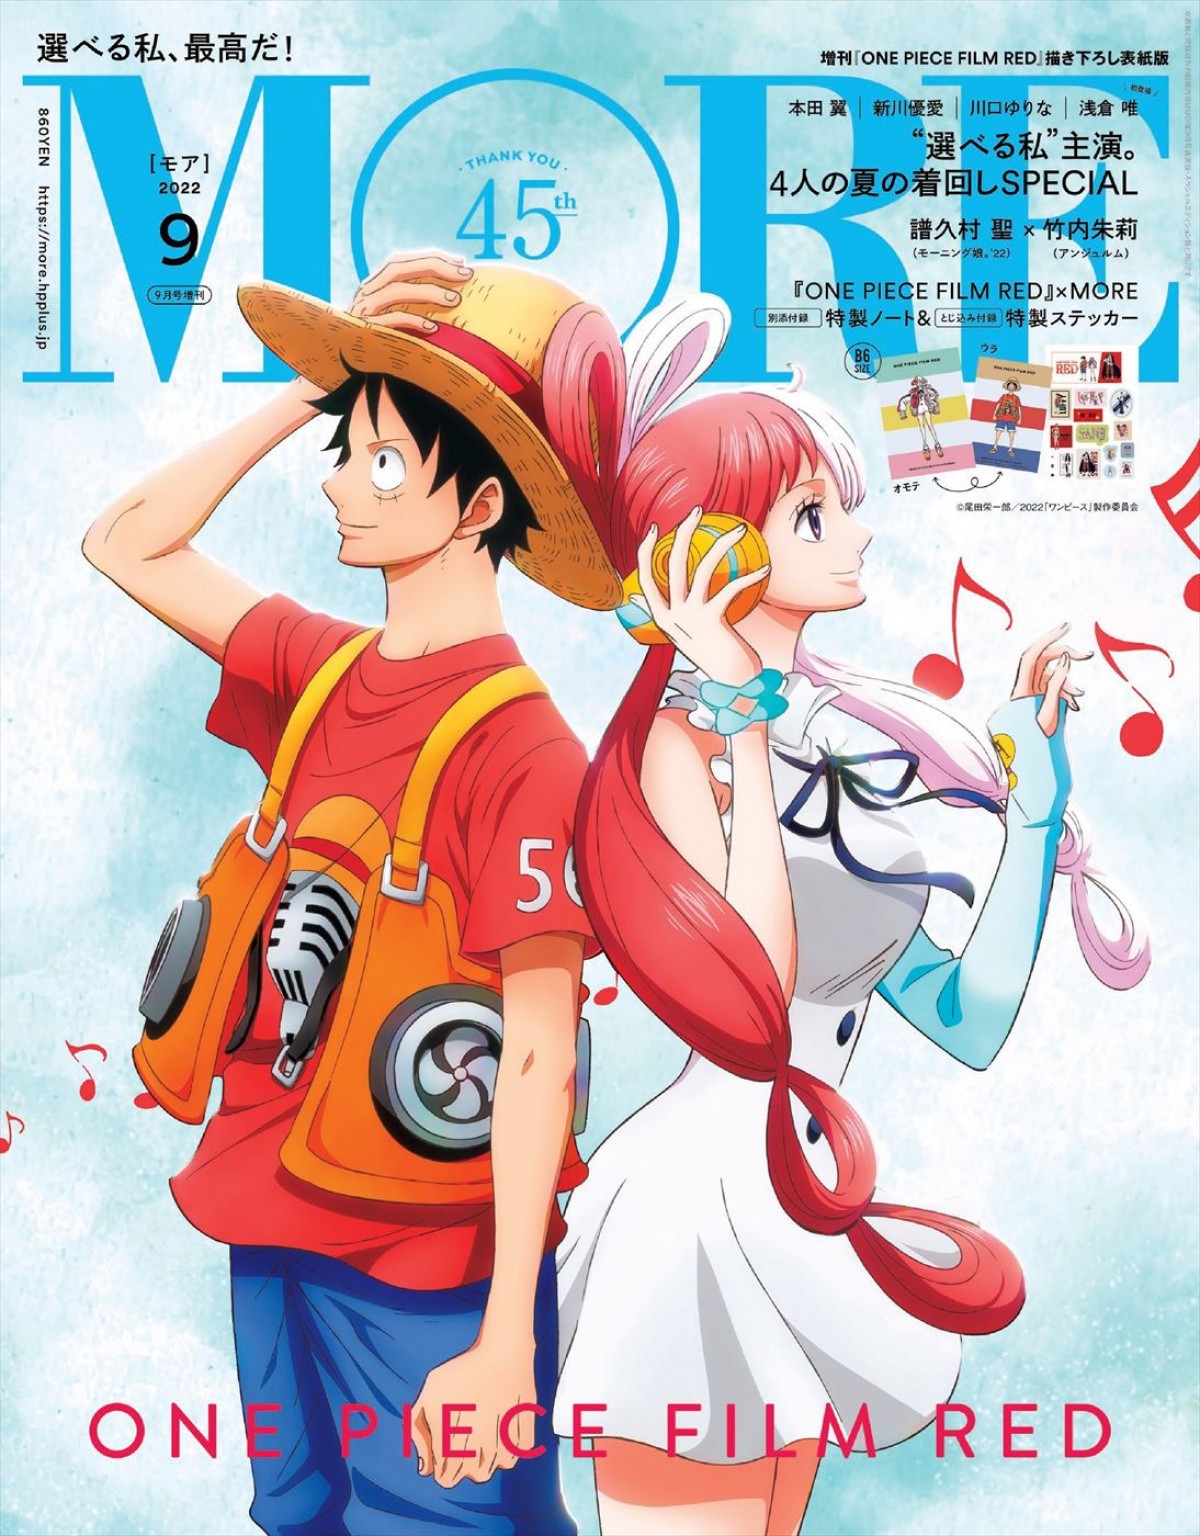 One Piece Film Red ルフィ ウタの描き下ろしも More 9月号 3バージョン発売 22年7月日 エンタメ ニュース クランクイン